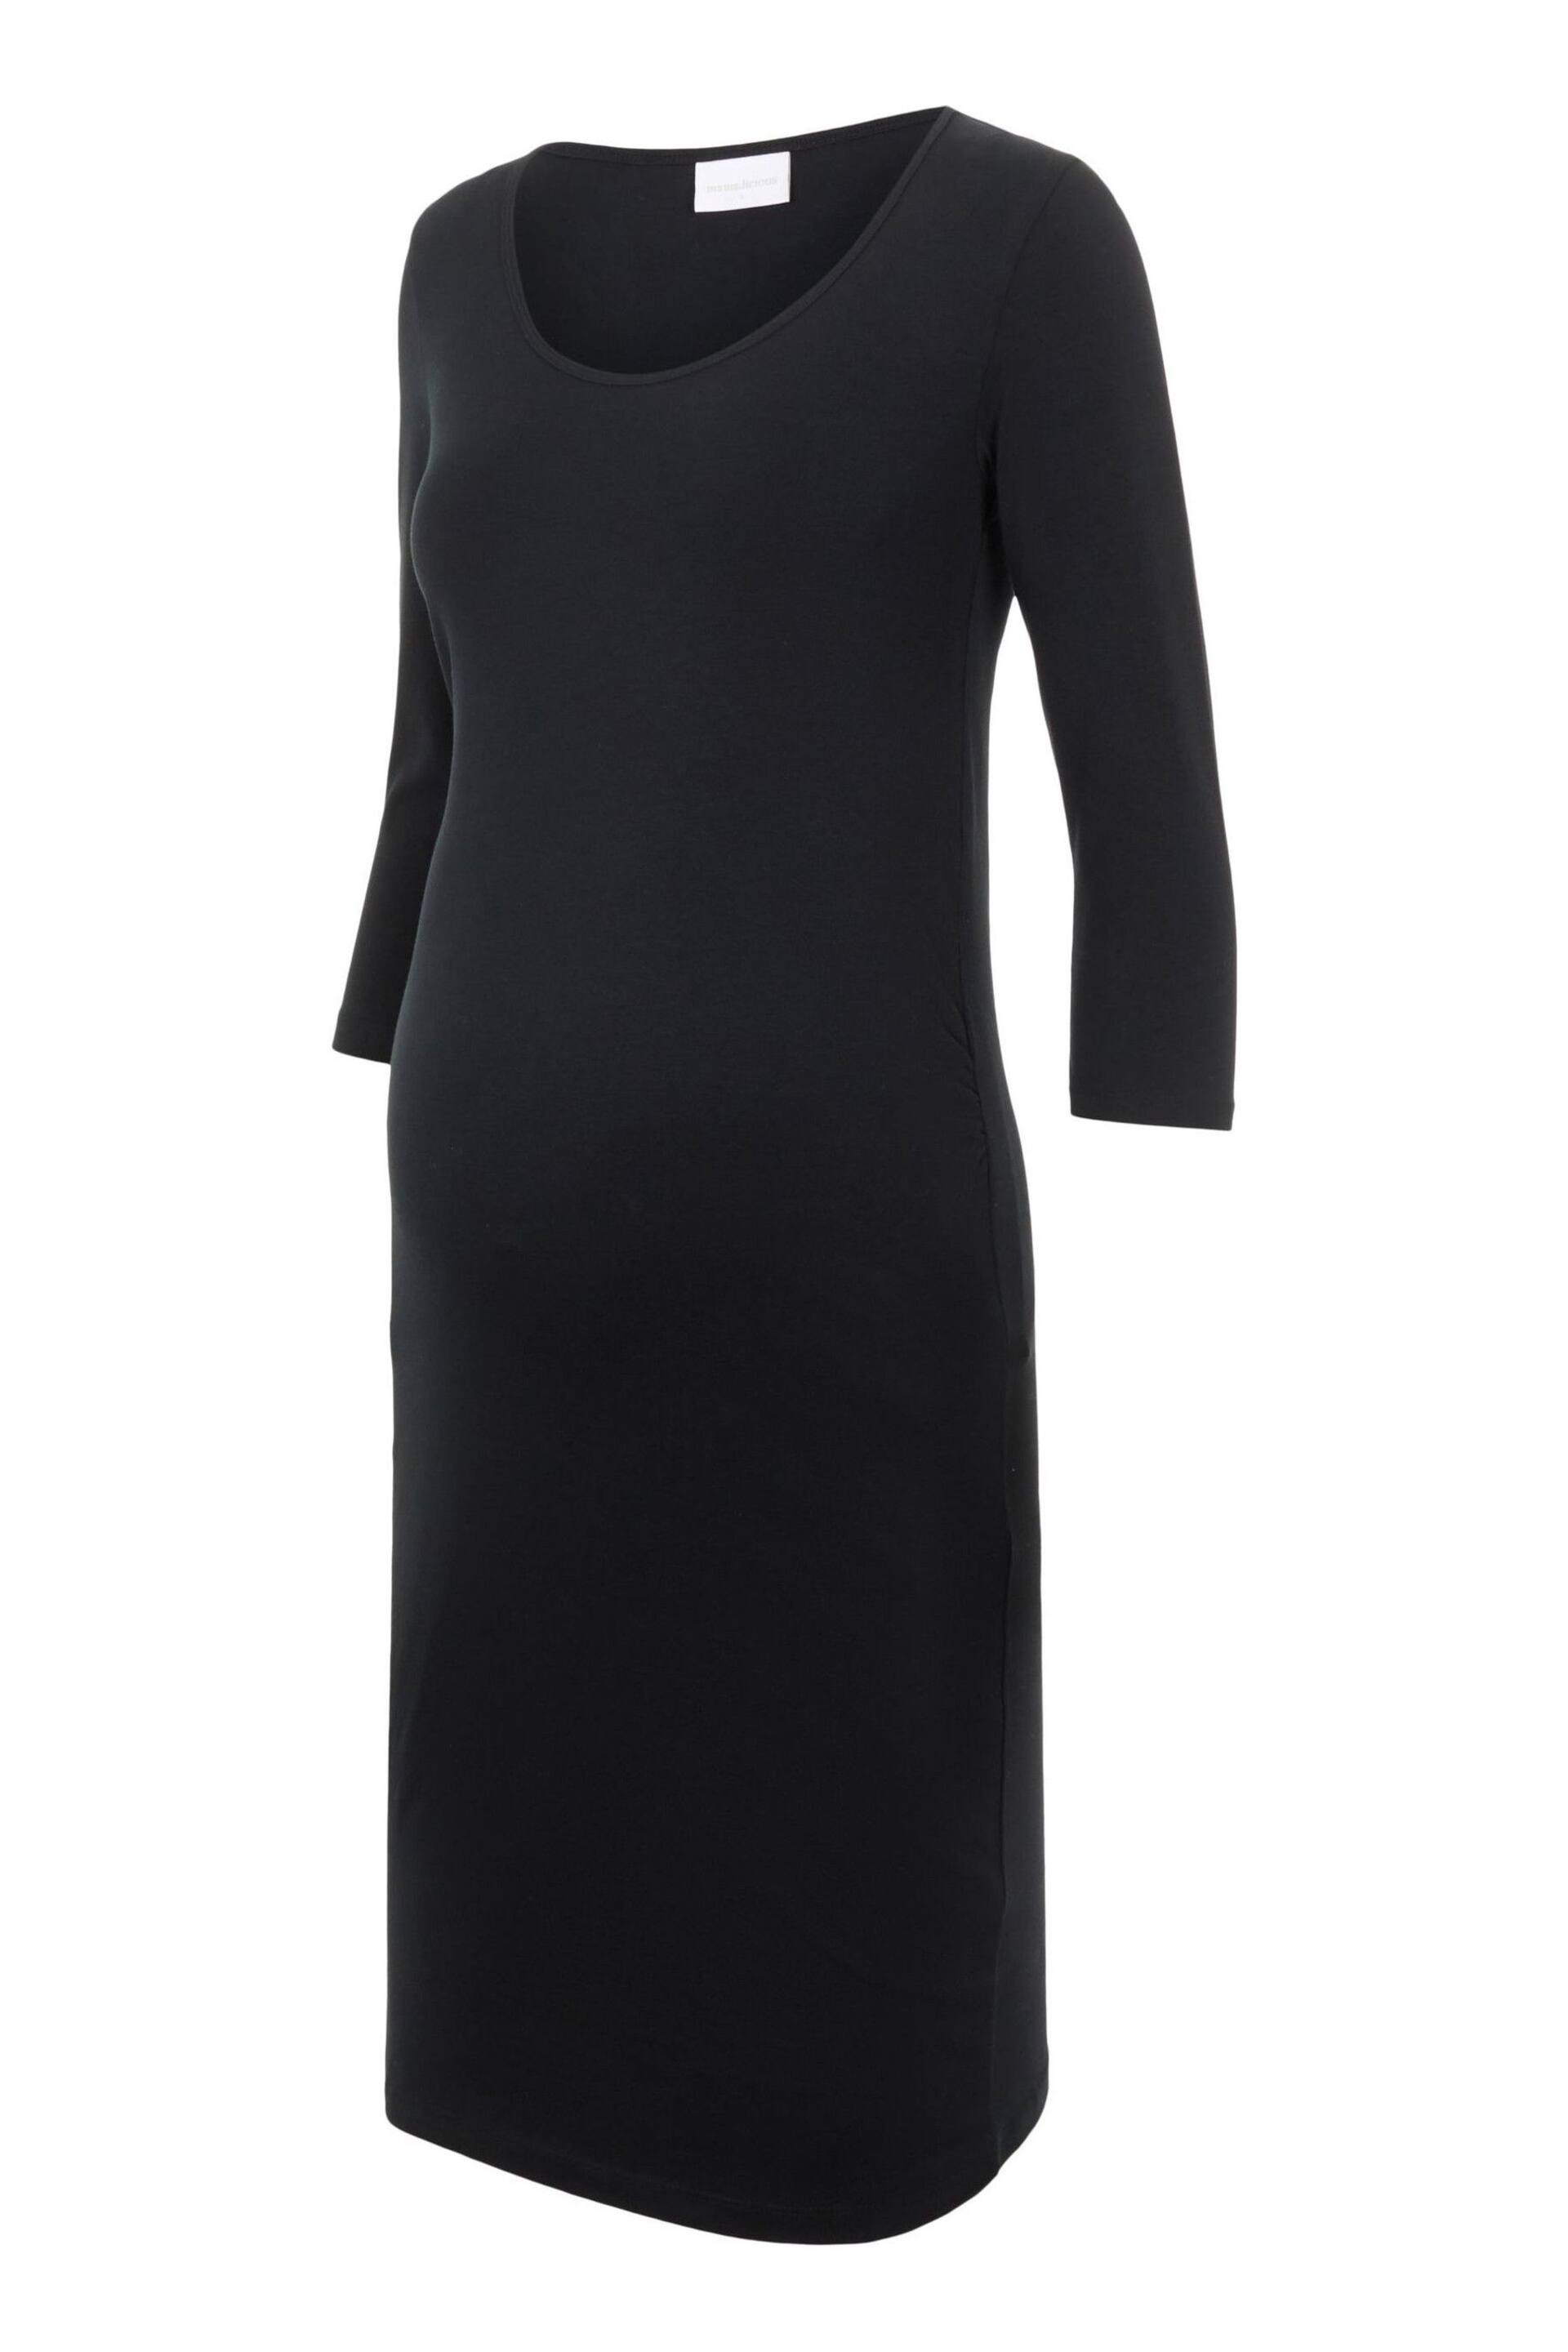 Mamalicious Black 3/4 Sleeve Maternity Dress - Image 5 of 5